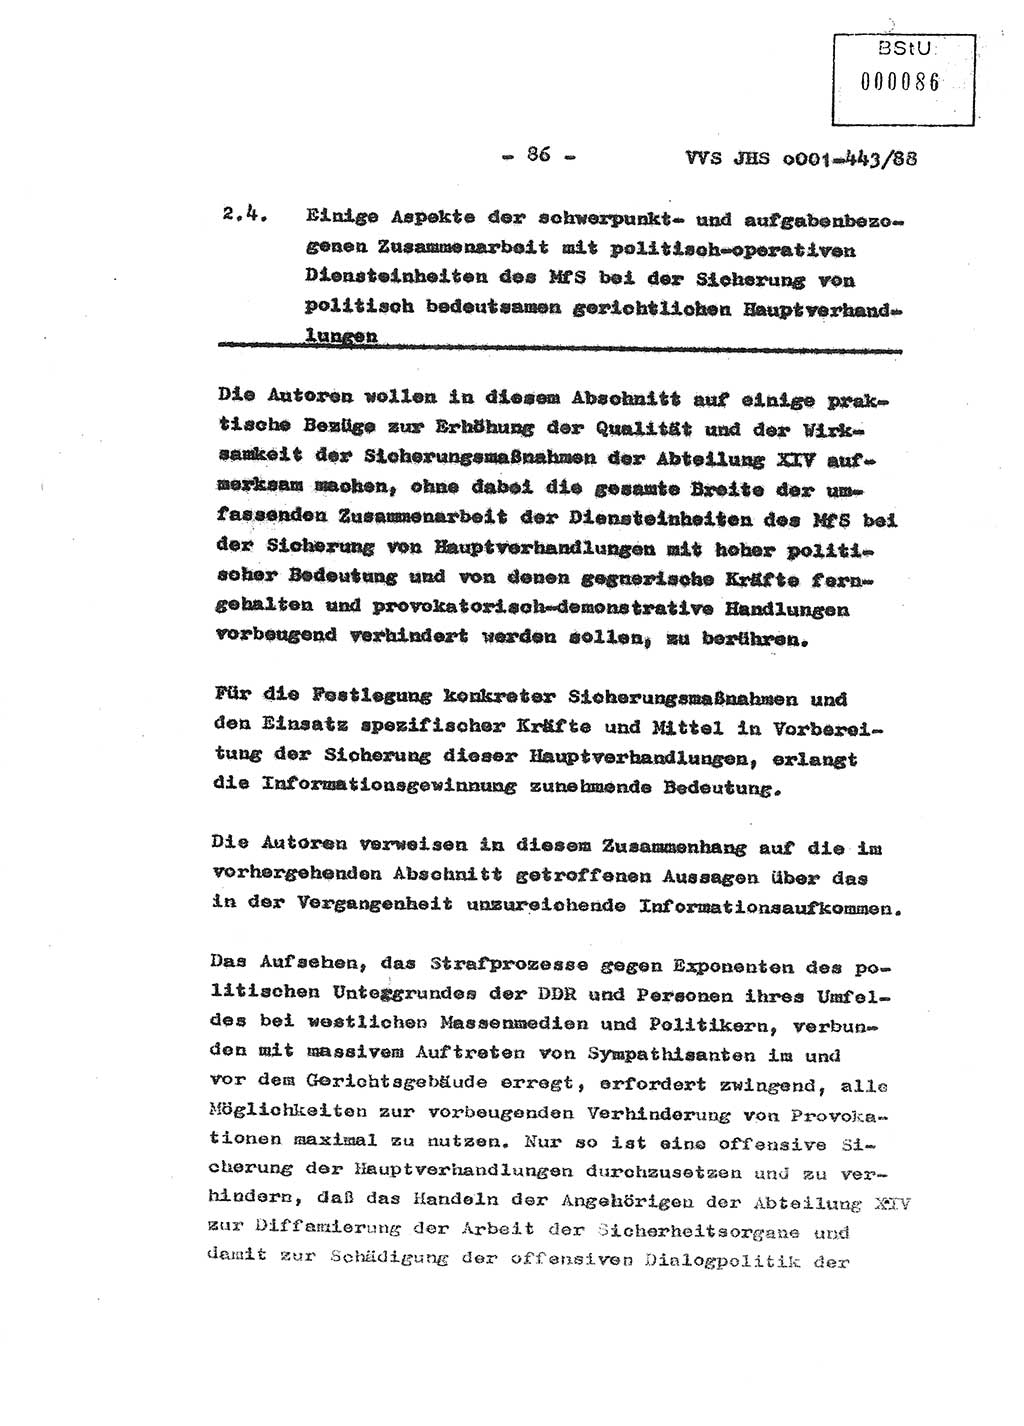 Diplomarbeit Hauptmann Michael Rast (Abt. ⅩⅣ), Major Bernd Rahaus (Abt. ⅩⅣ), Ministerium für Staatssicherheit (MfS) [Deutsche Demokratische Republik (DDR)], Juristische Hochschule (JHS), Vertrauliche Verschlußsache (VVS) o001-443/88, Potsdam 1988, Seite 86 (Dipl.-Arb. MfS DDR JHS VVS o001-443/88 1988, S. 86)